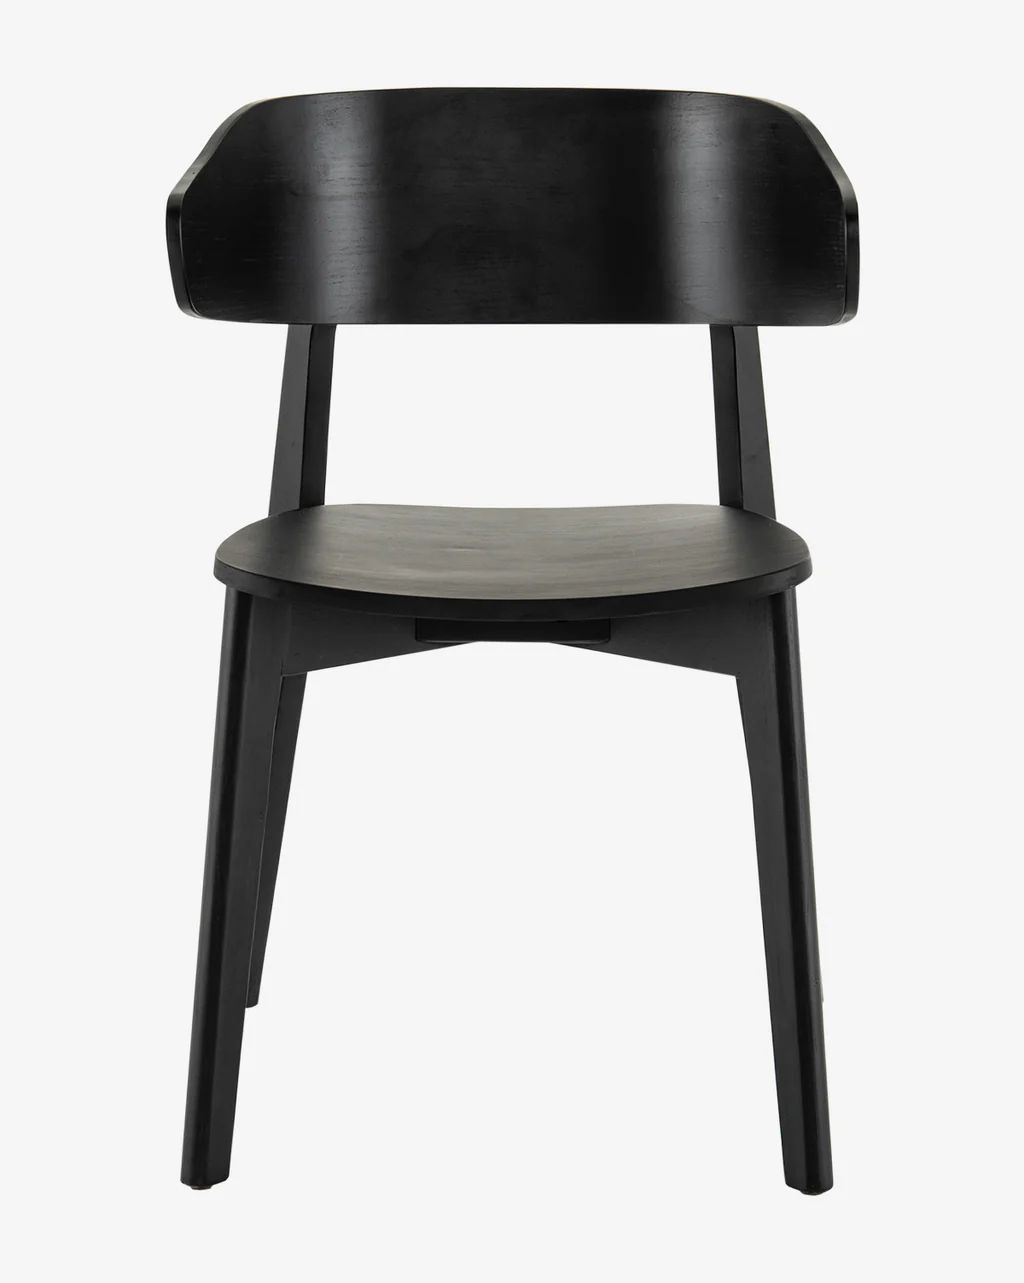 Tenley Chair | McGee & Co.